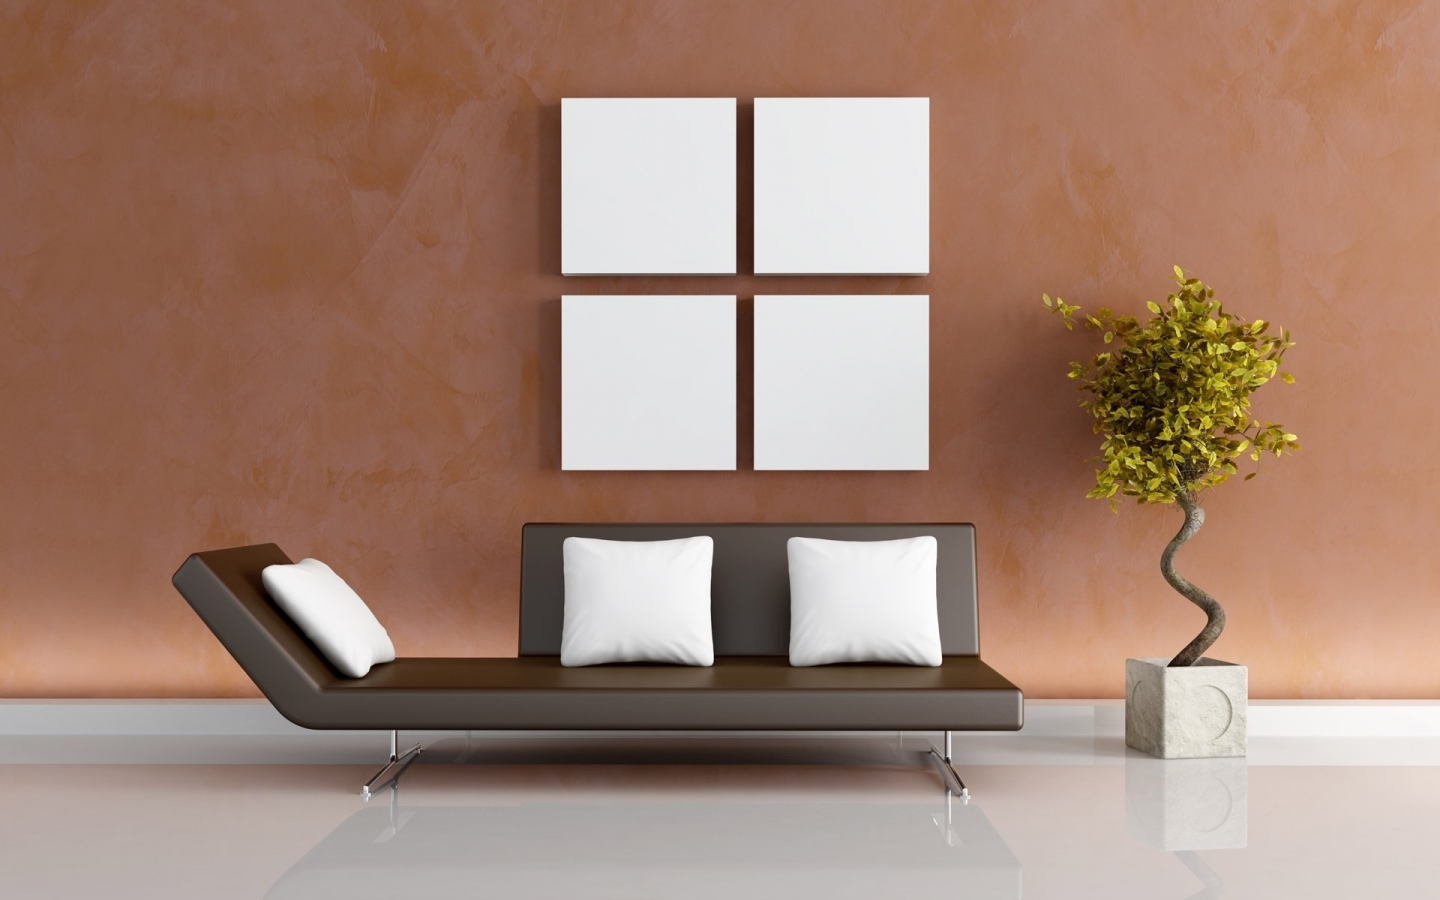 Modern living decor for 1440 x 900 widescreen resolution